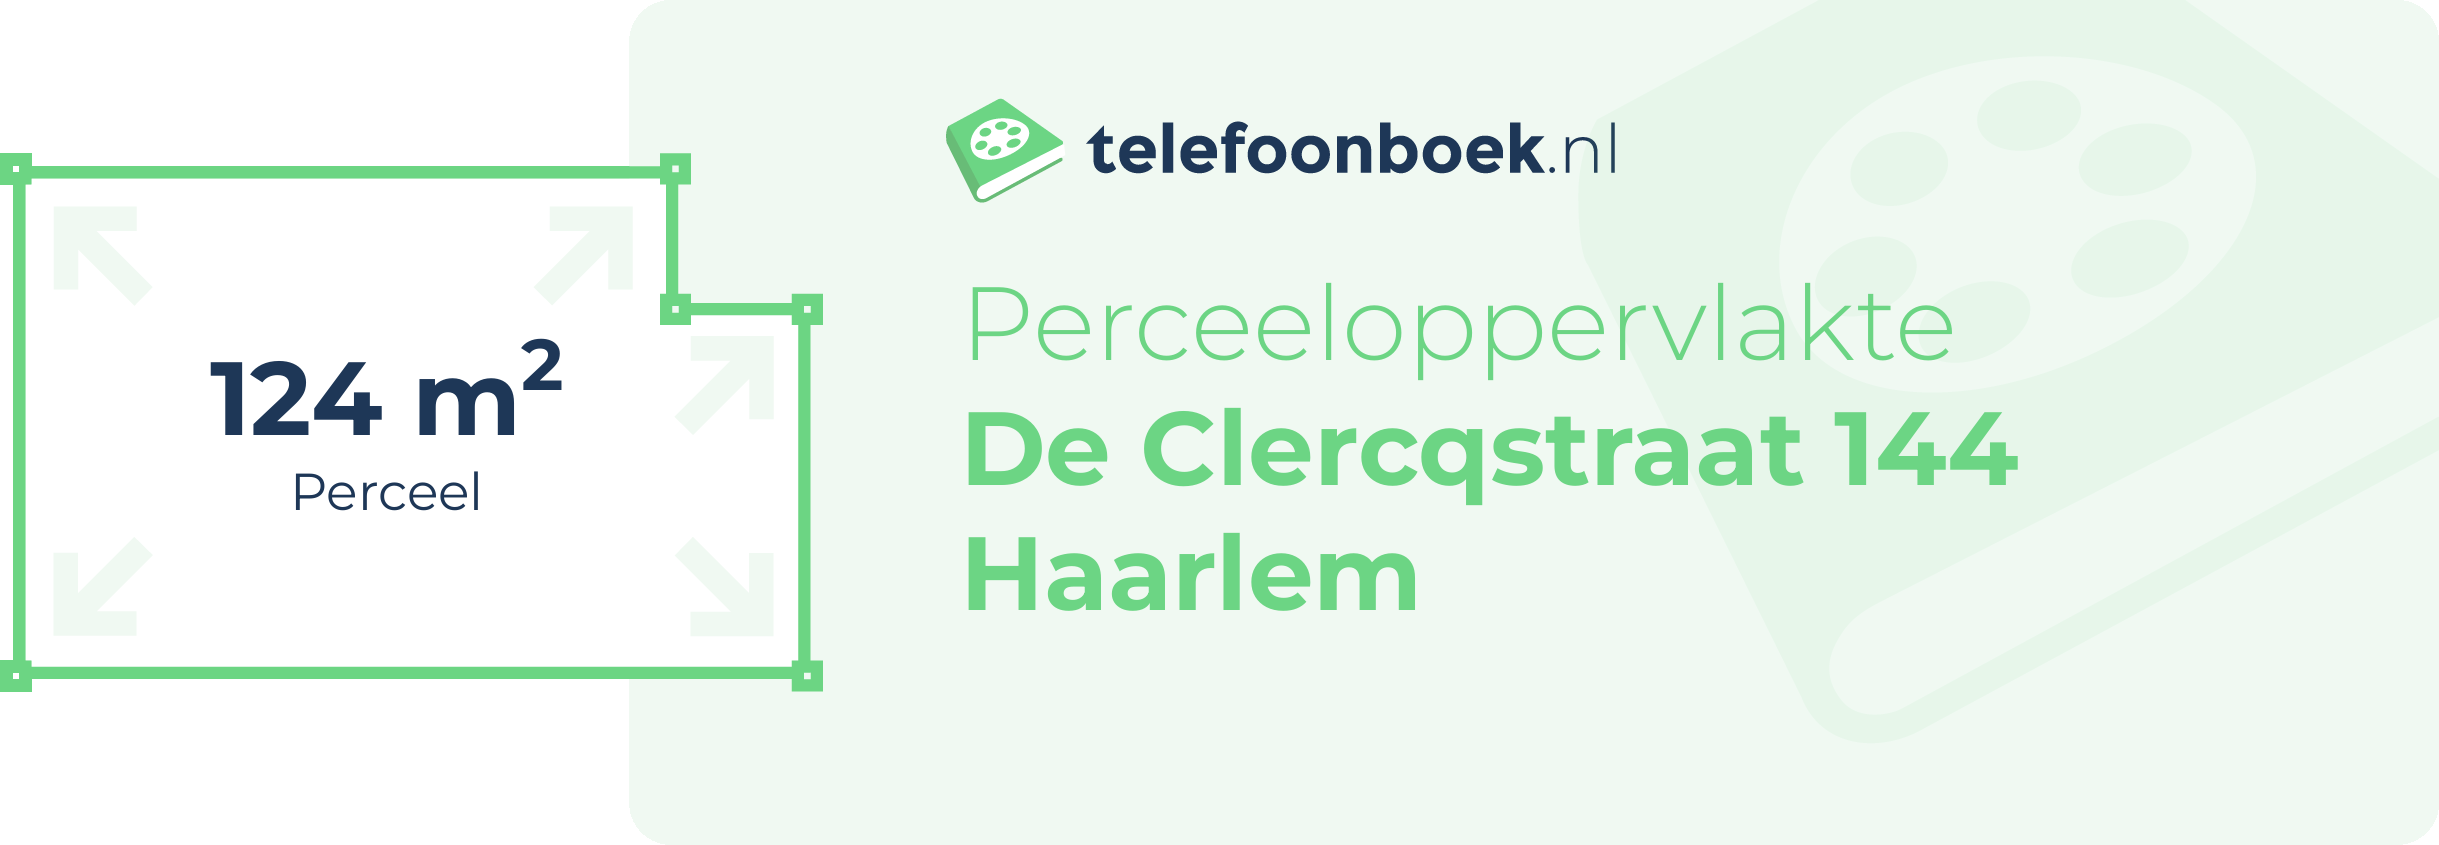 Perceeloppervlakte De Clercqstraat 144 Haarlem